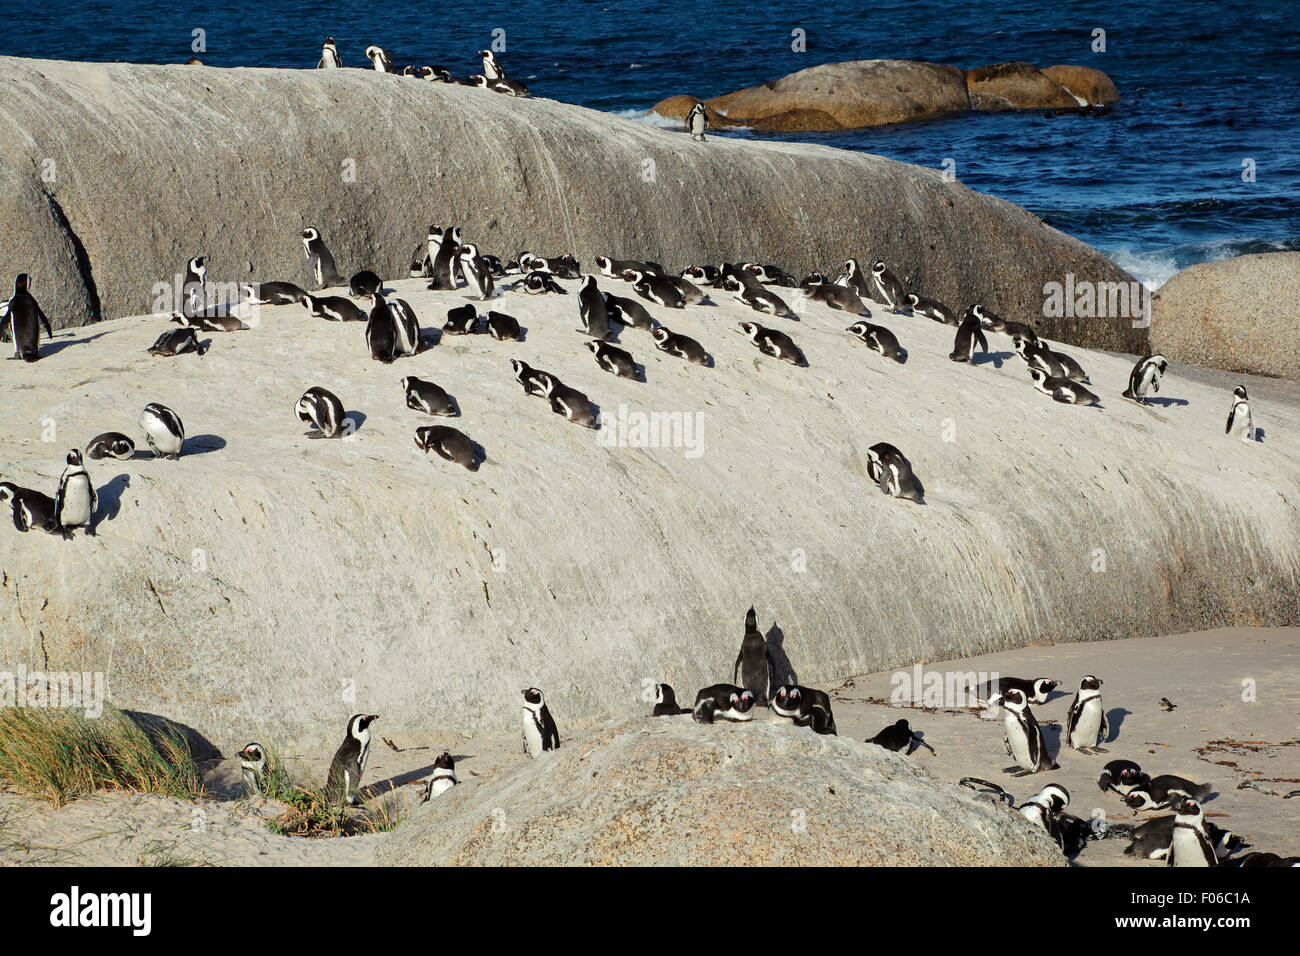 Colonie de pingouins africains (Spheniscus demersus), Western Cape, Afrique du Sud Banque D'Images